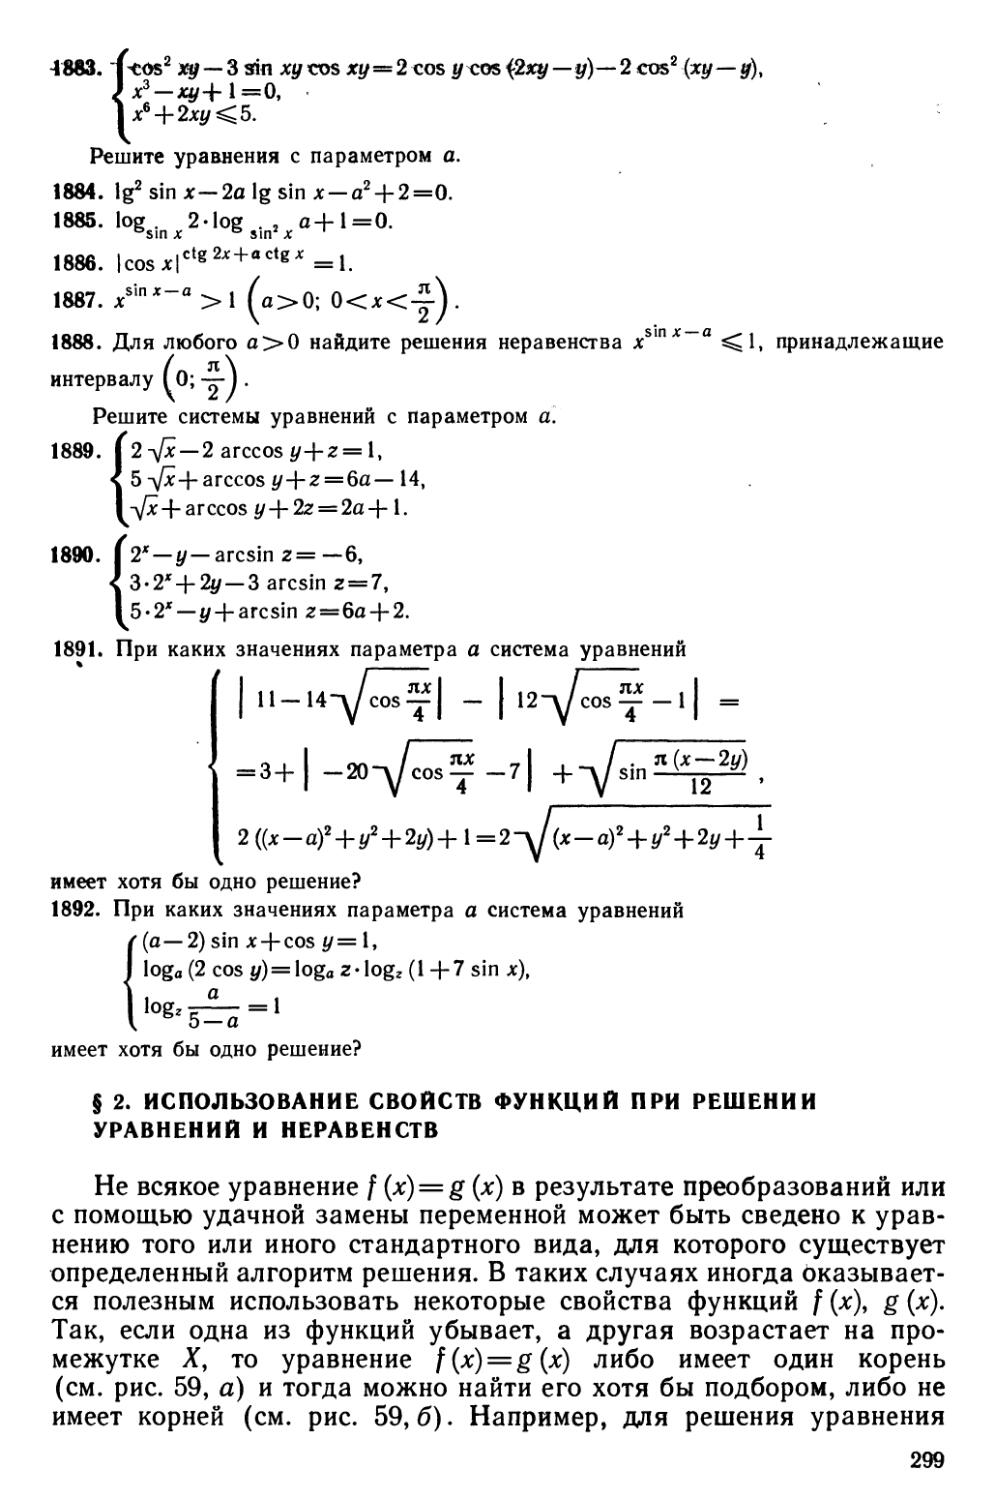 § 2 Использование свойств функций при решении уравнений и неравенств